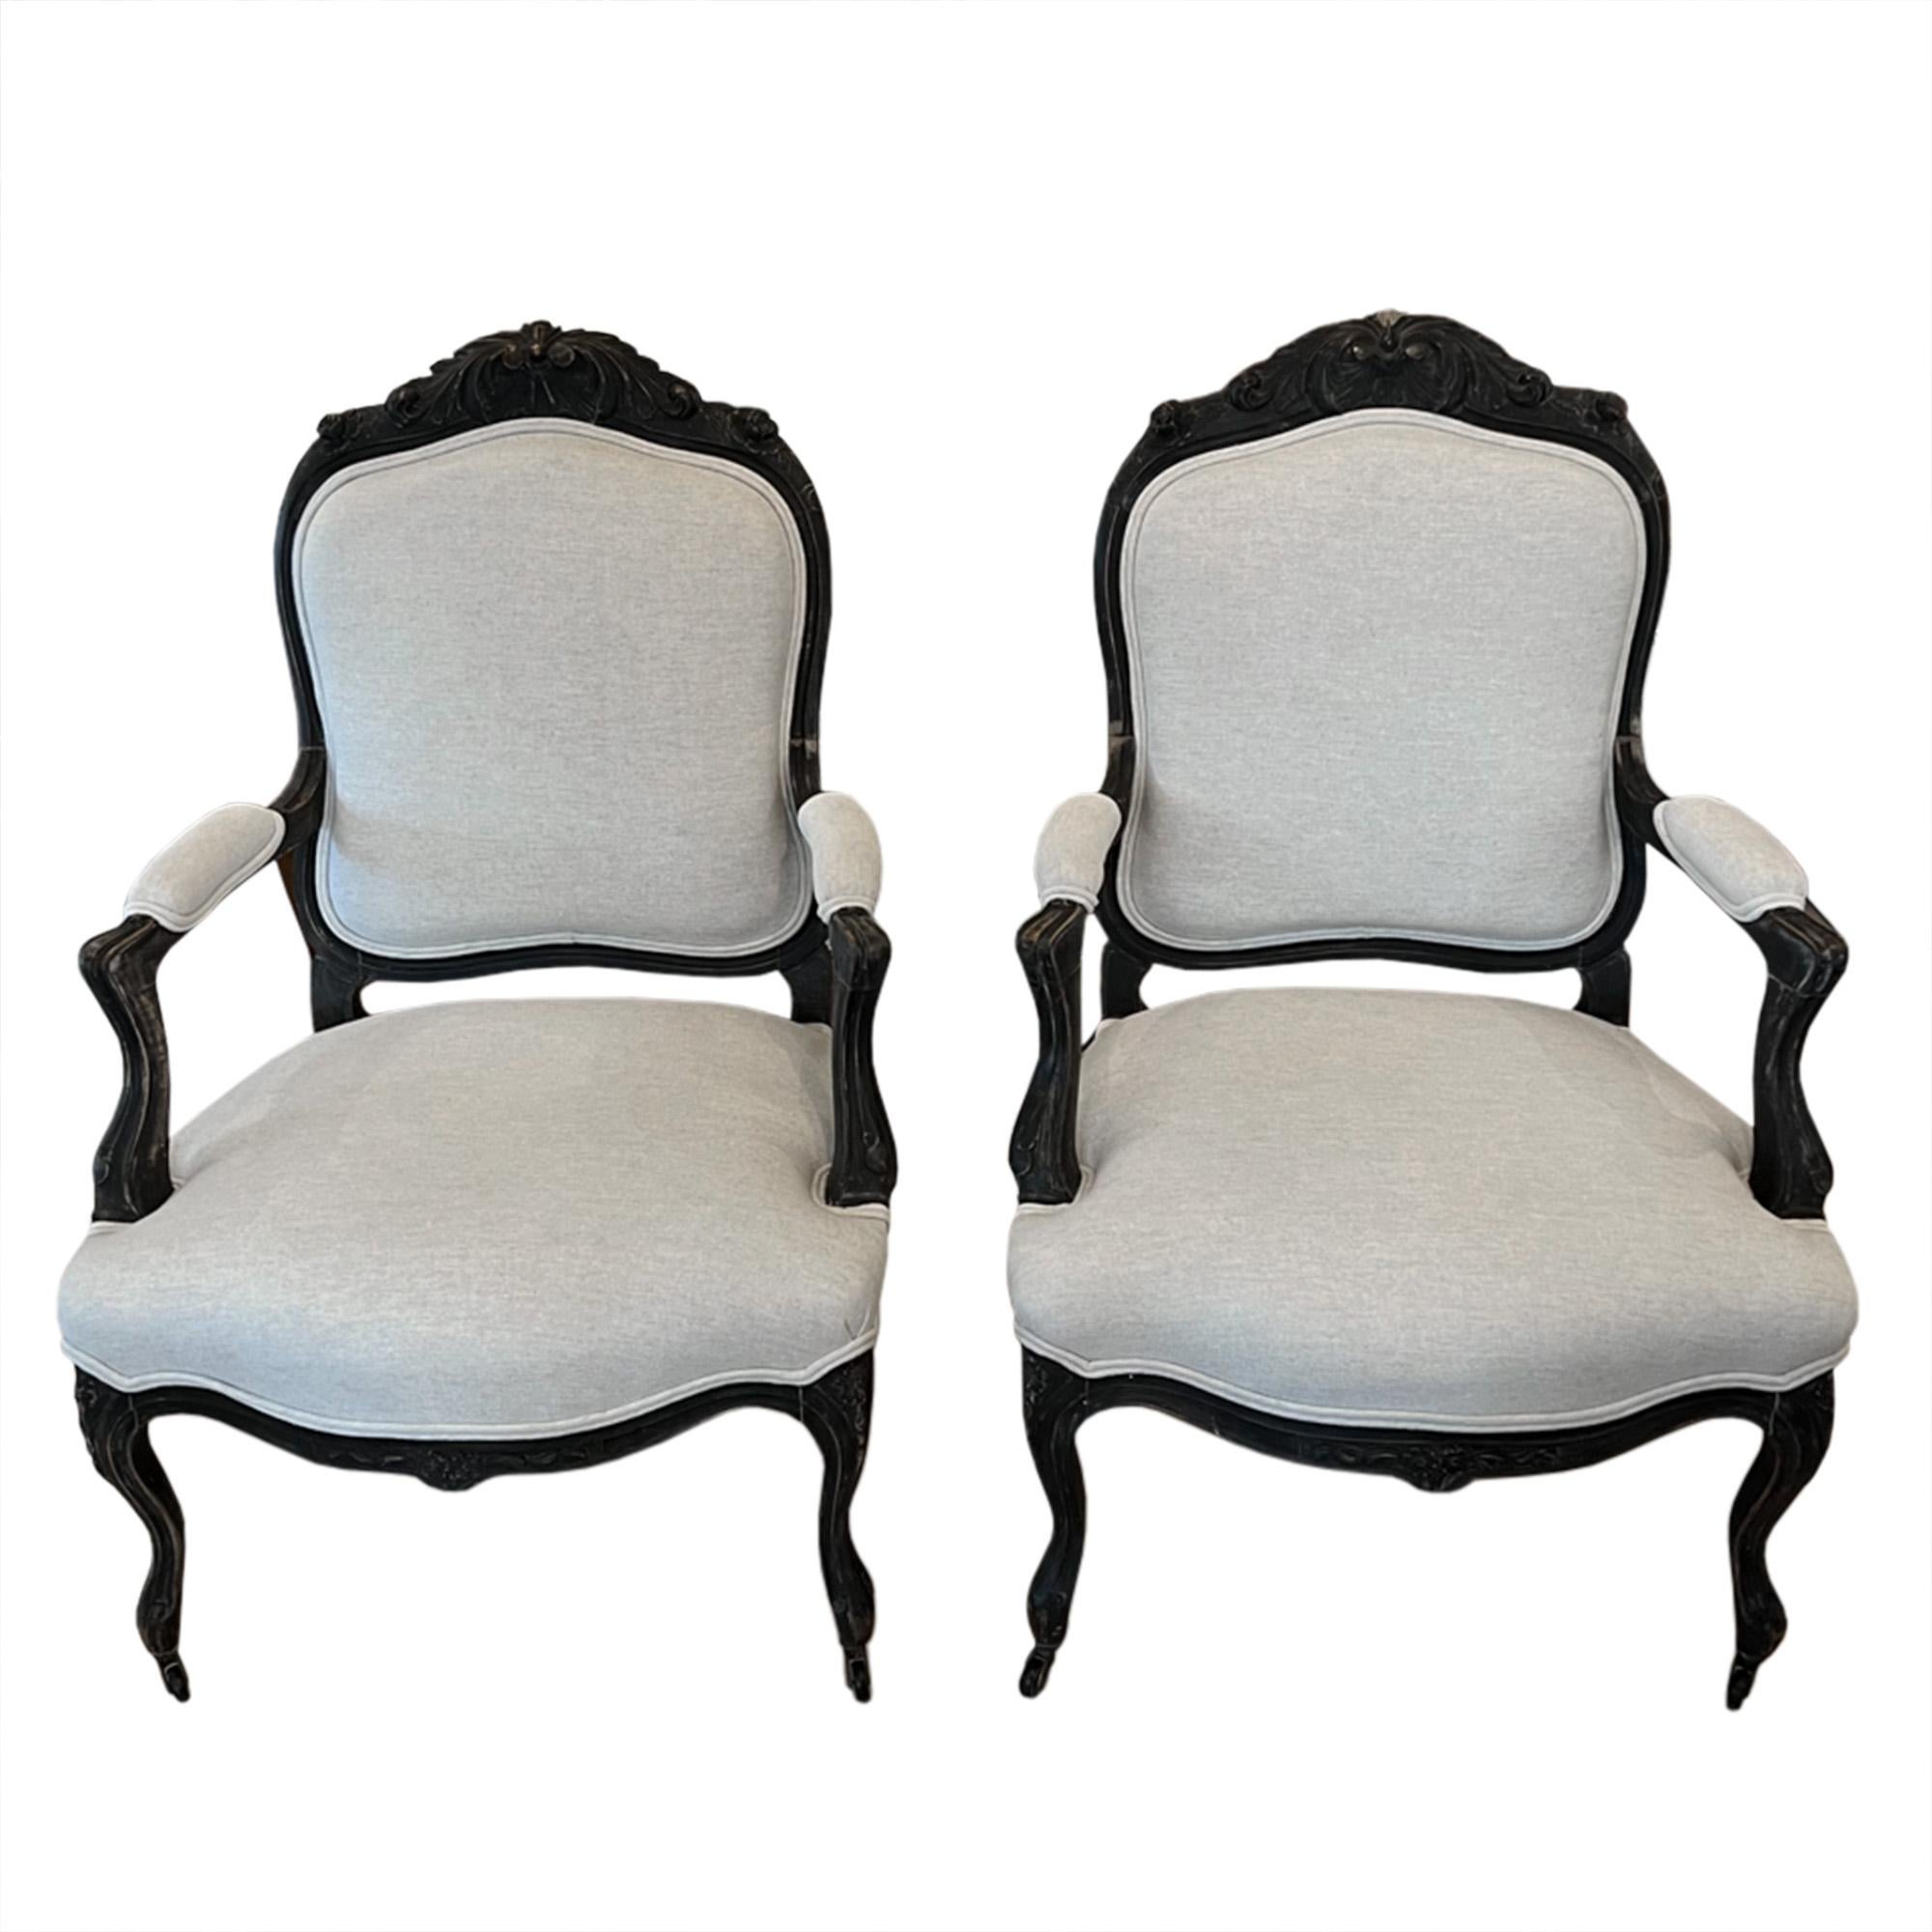 Une belle paire de chaises de salon françaises sculptées du 19ème siècle avec peinture d'origine et roulettes aux pieds avant. 

Nous les avons fait tapisser dans un lin clair Mark Alexander.

Une superbe paire de chaises décoratives anciennes.